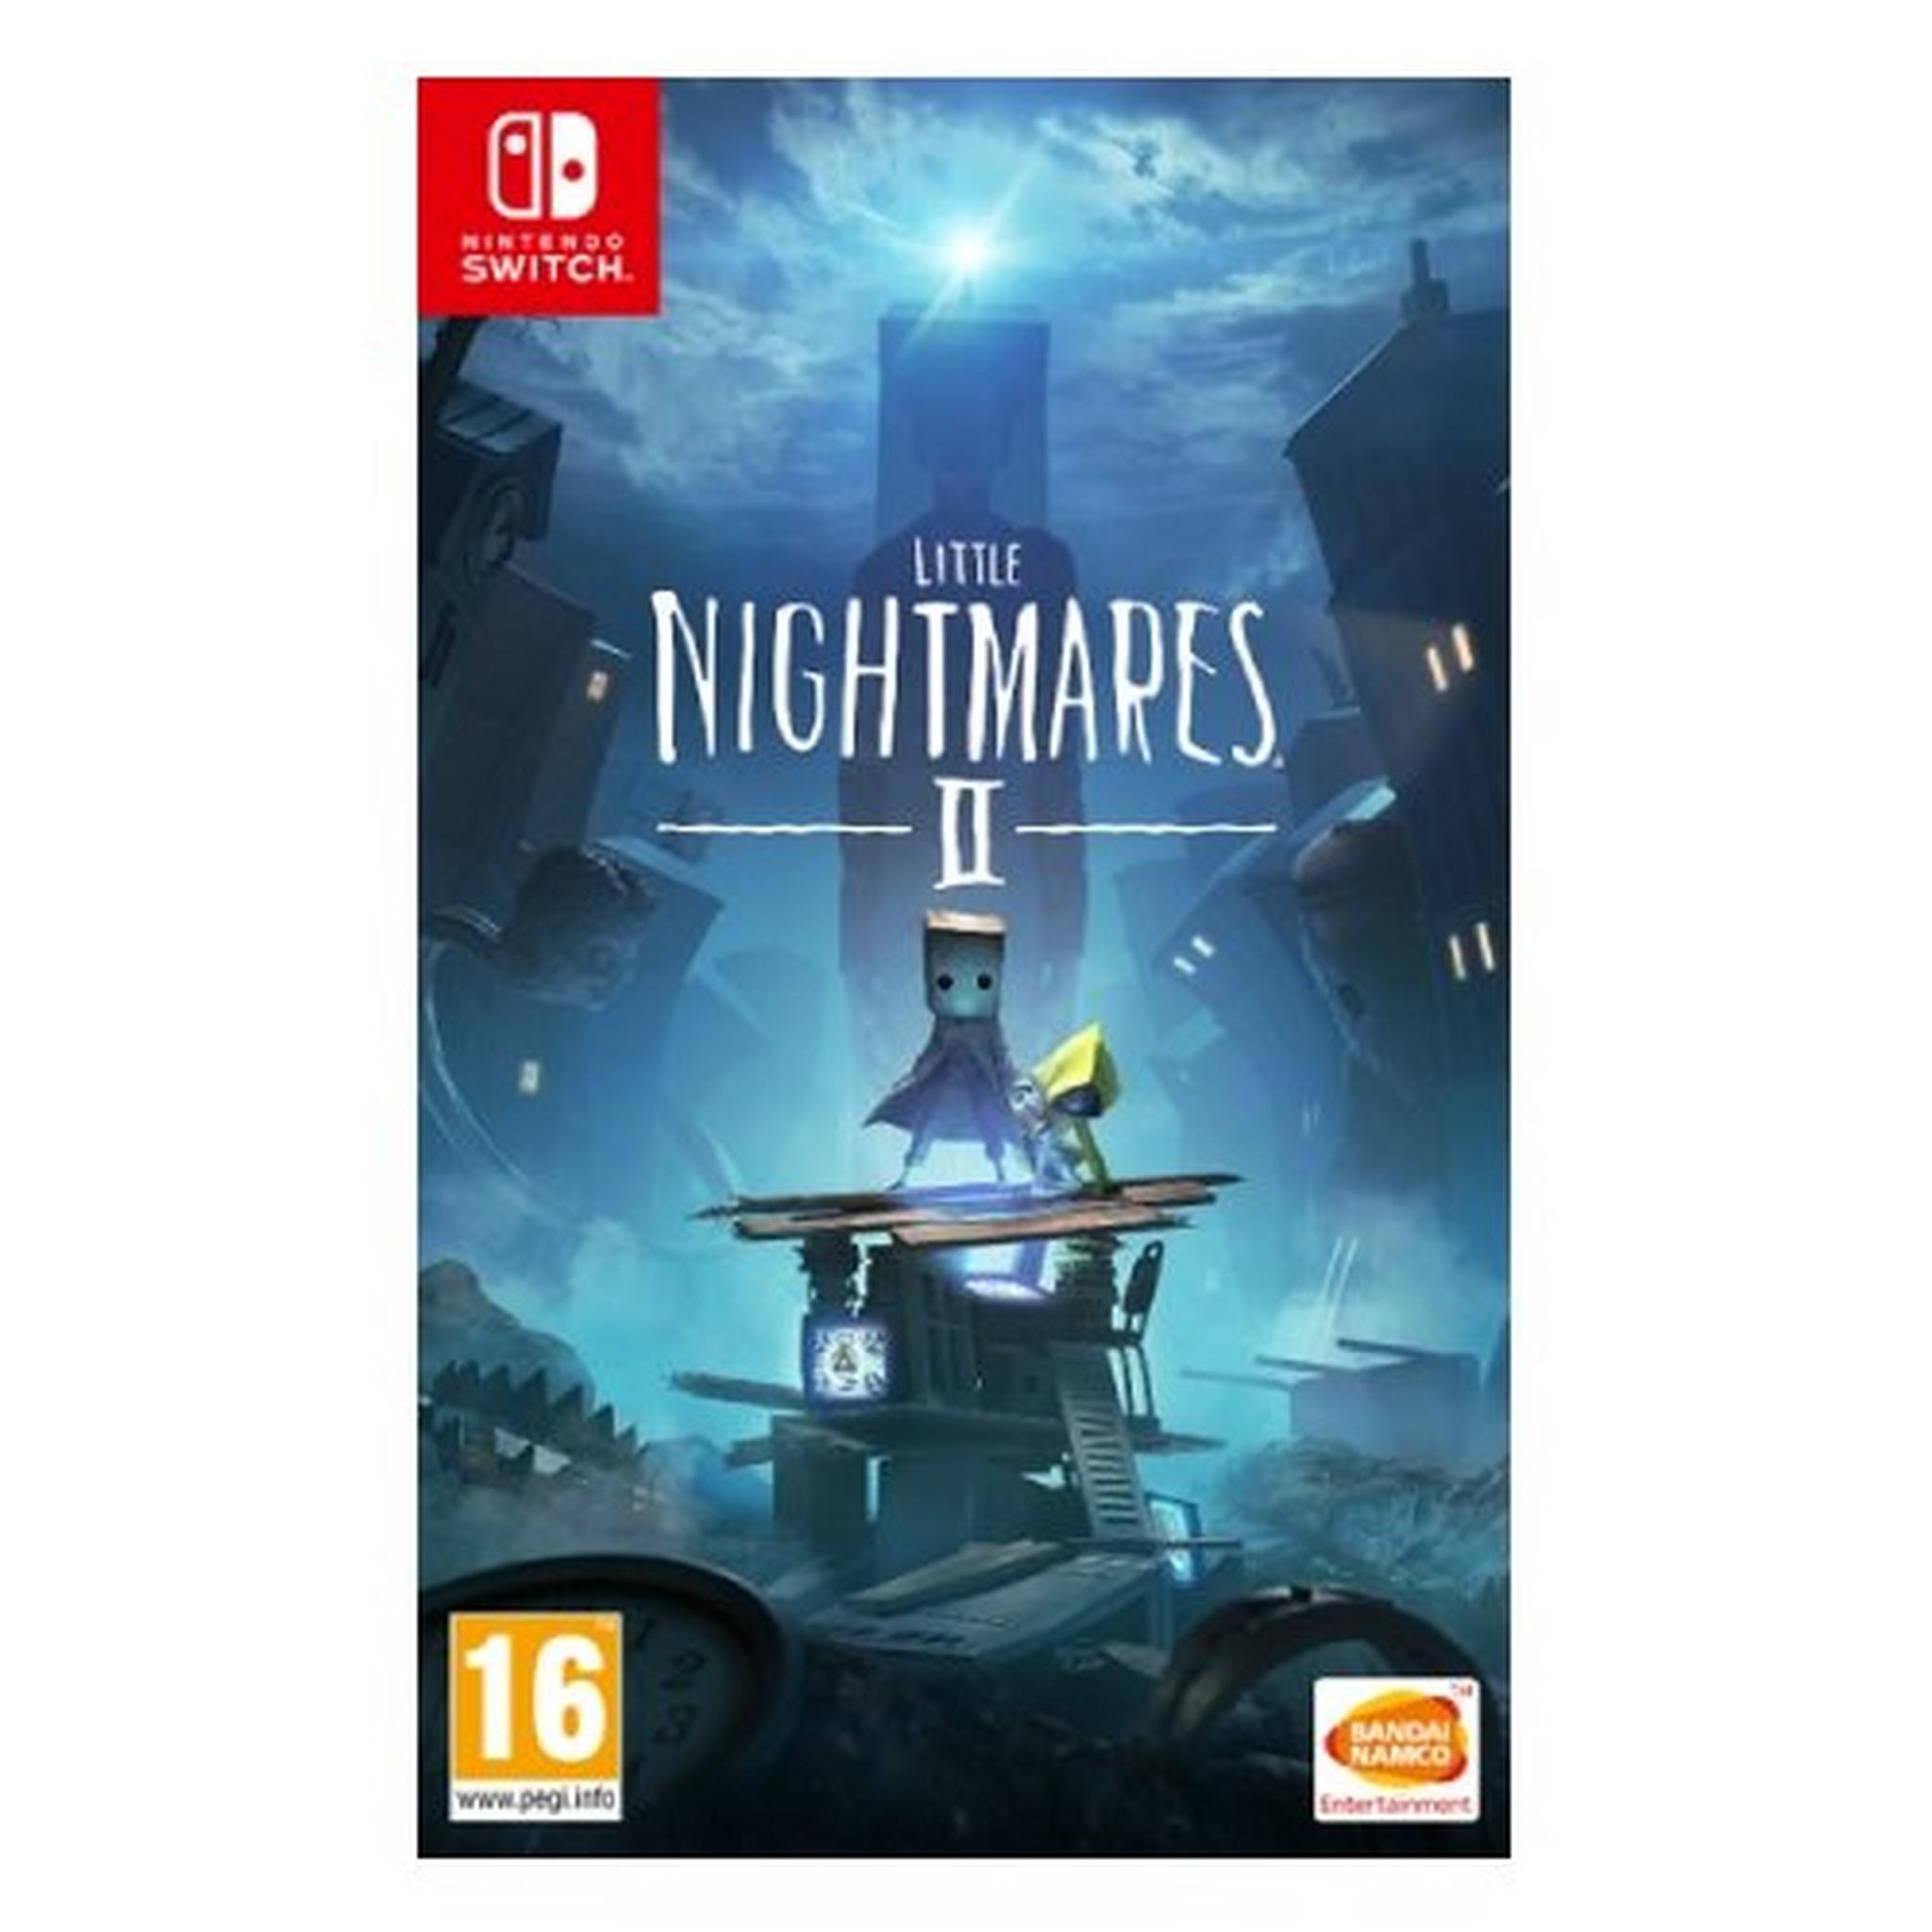 Little Nightmares II - Nintendo Switch Game